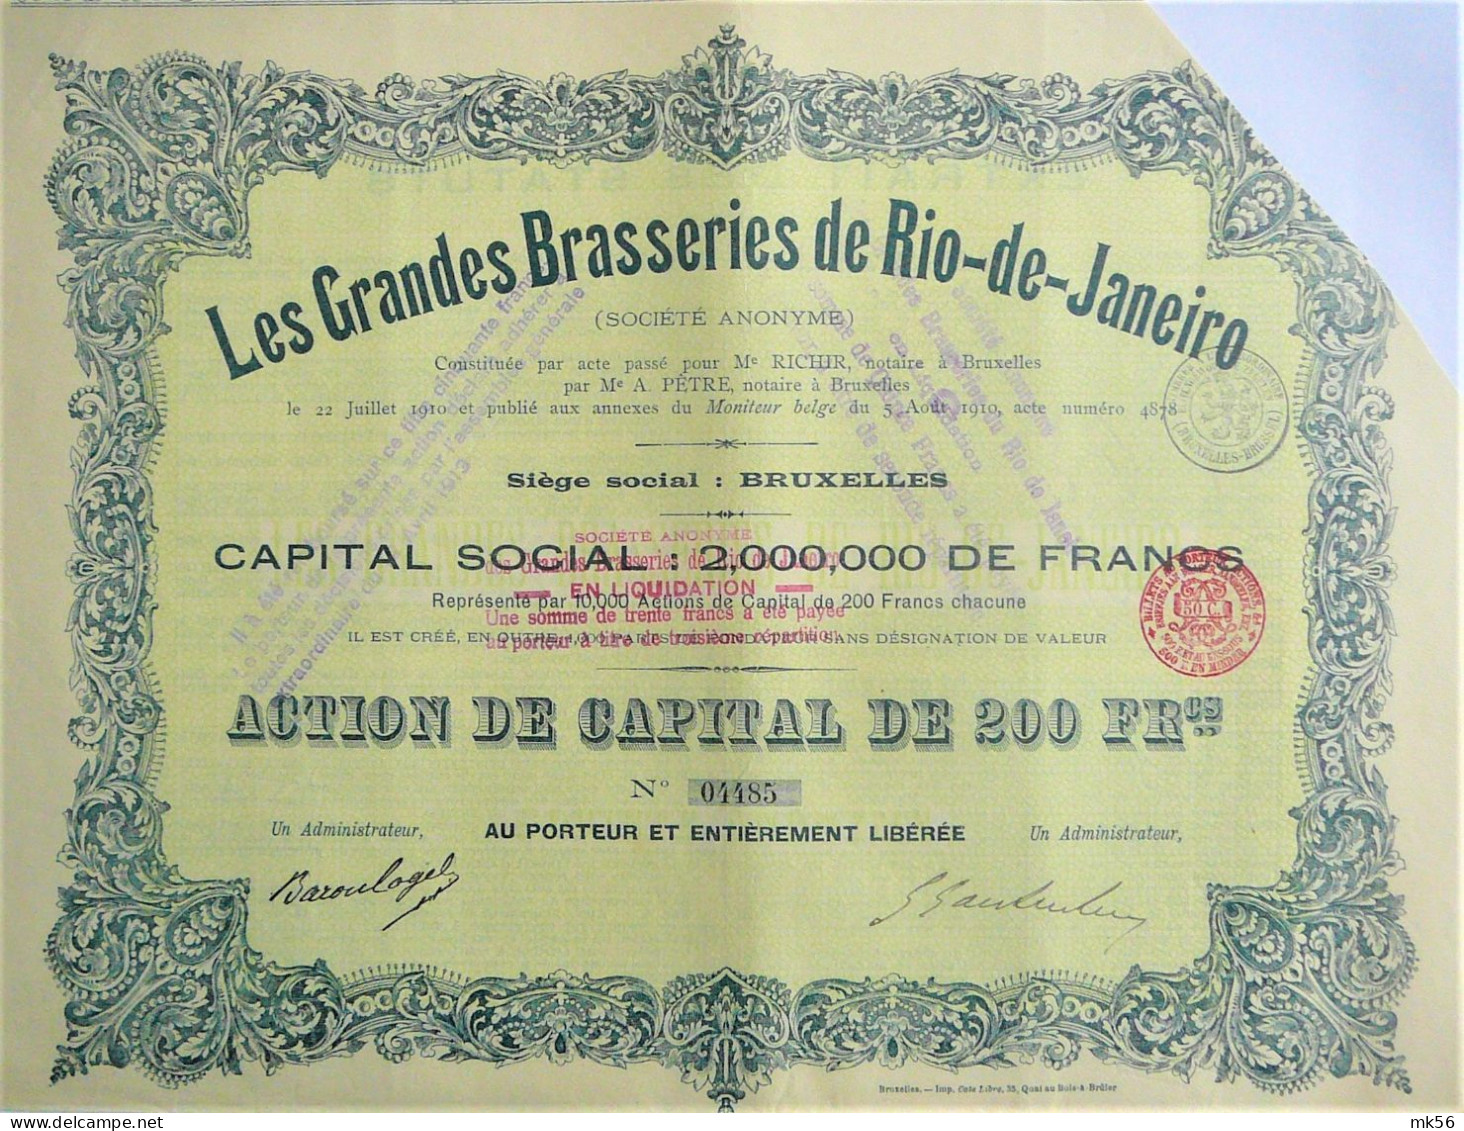 S.A.Les Grandes Brasseries Rio-de-Janeiro - Action De Capital 200f  (1910) - Tourism